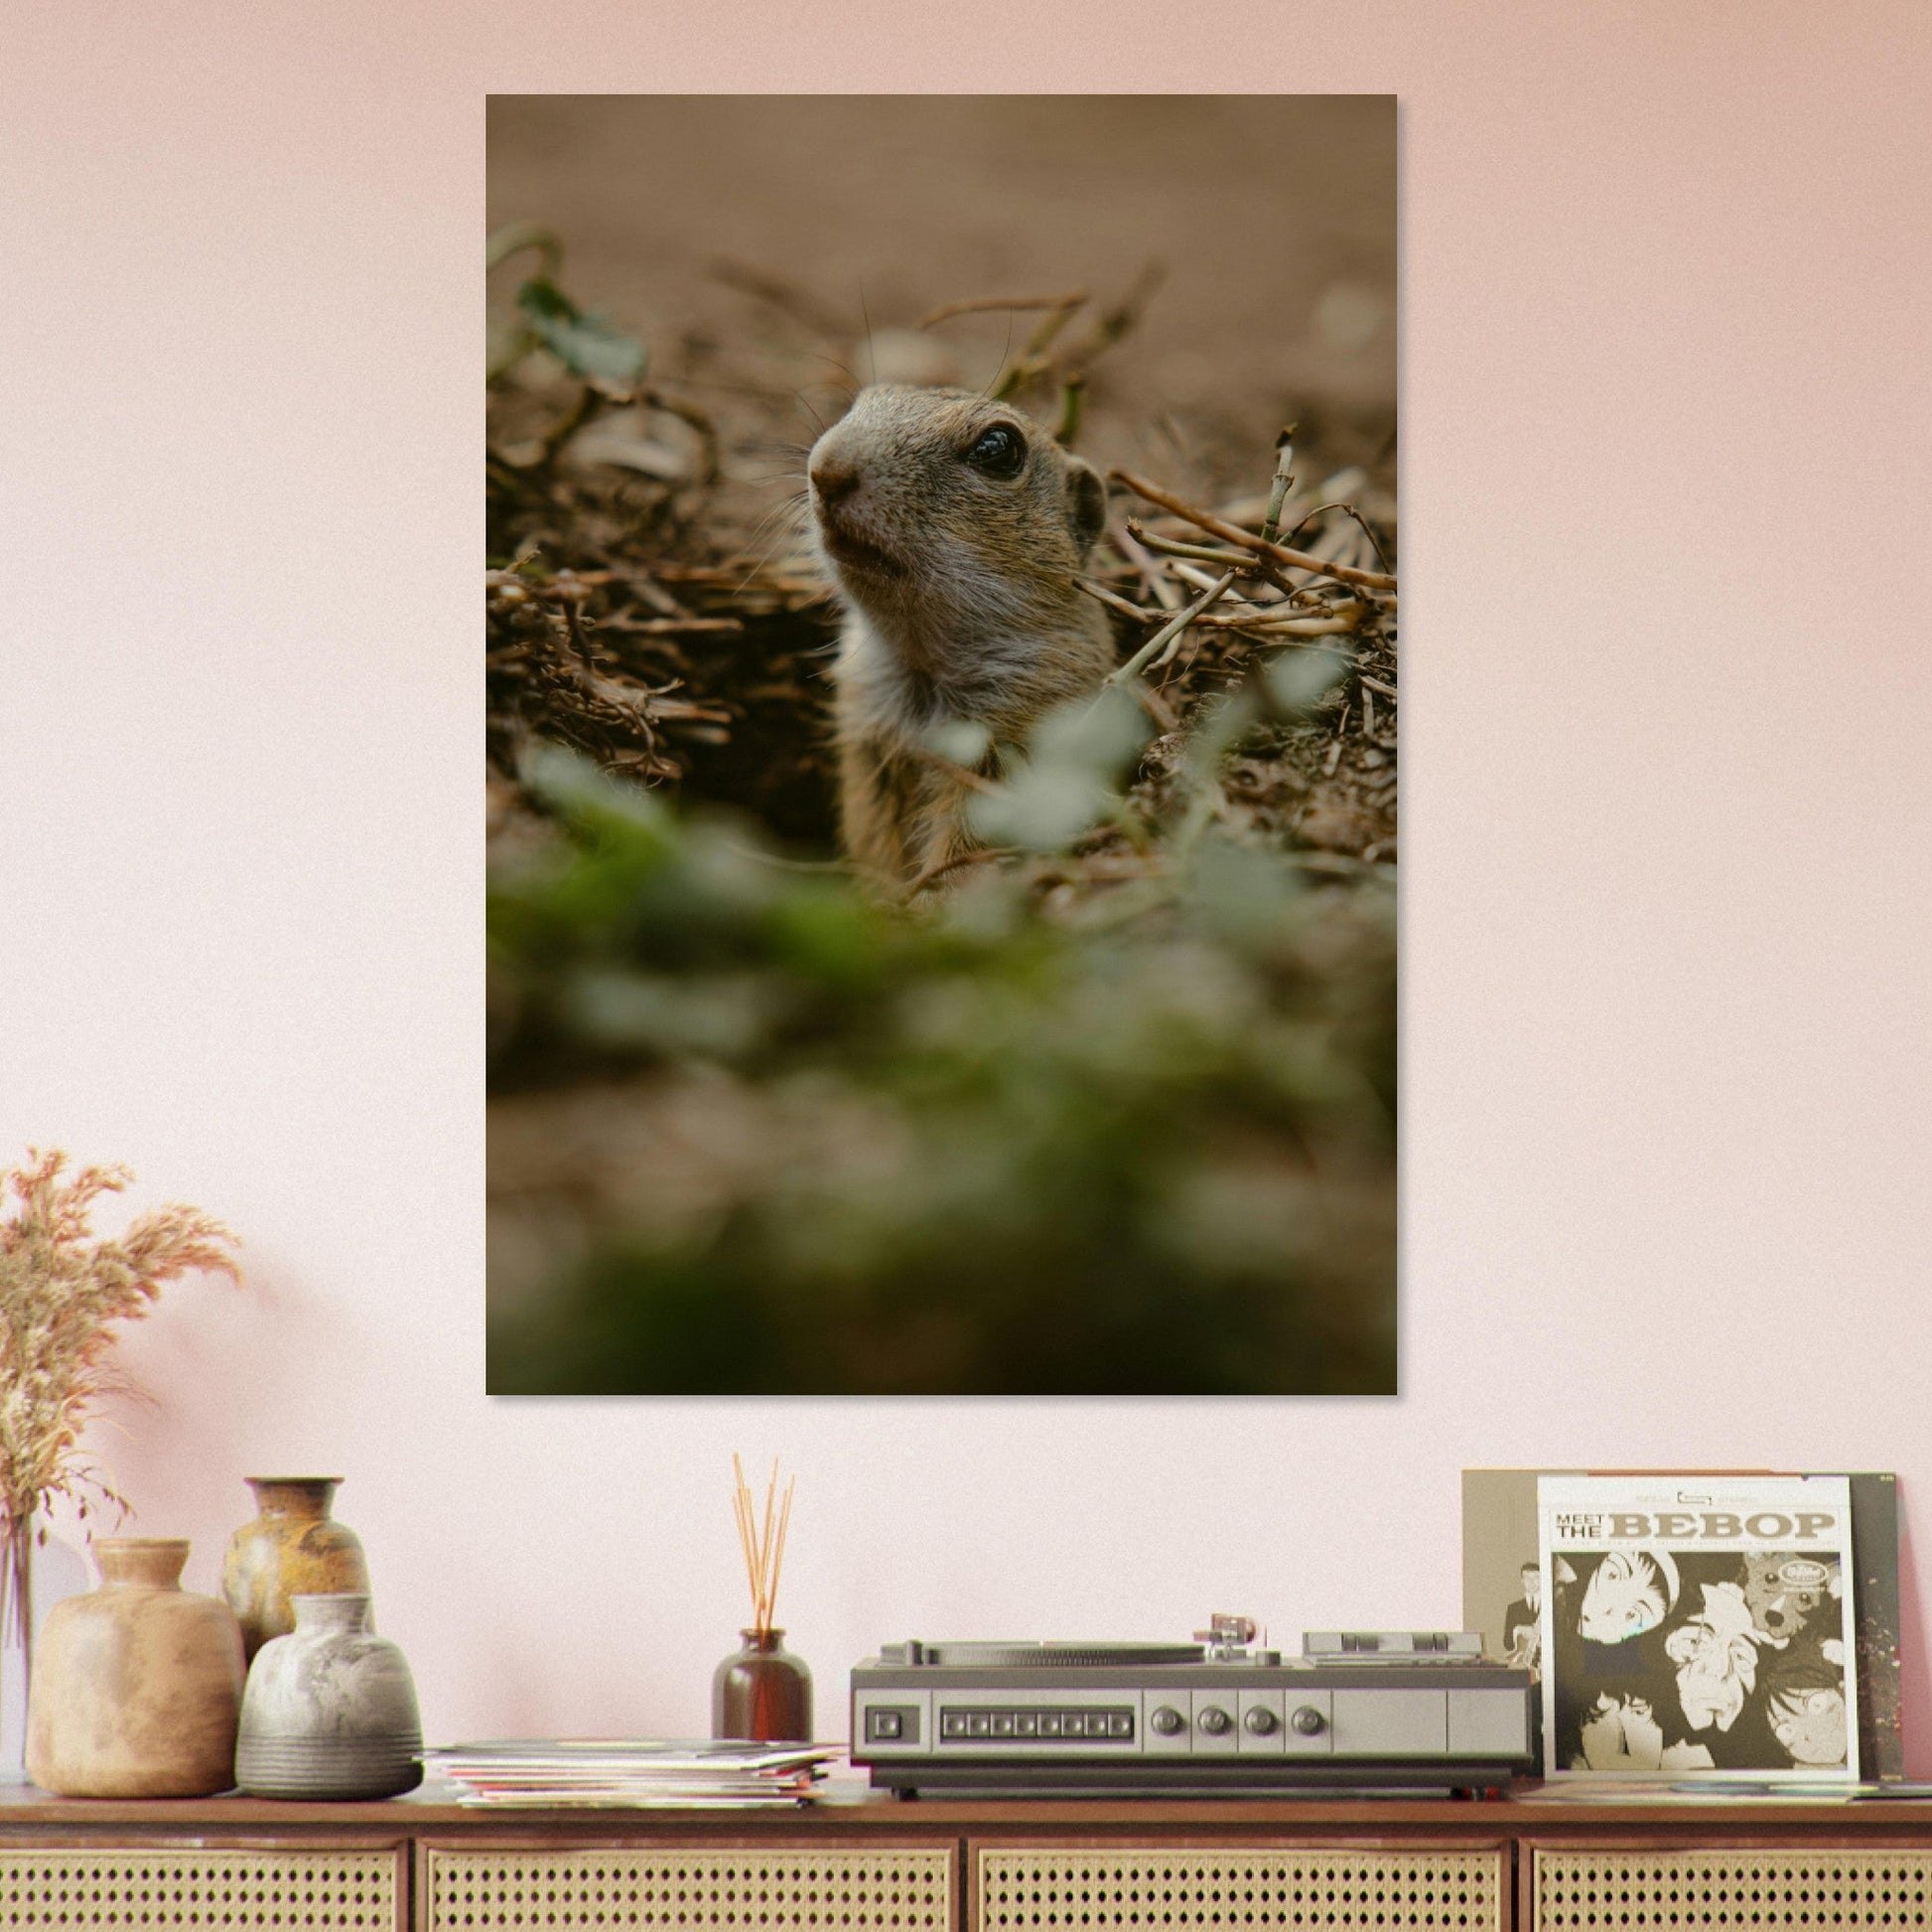 Vente Photo d'un marmotton, le bébé marmotte - Tableau photo paysage